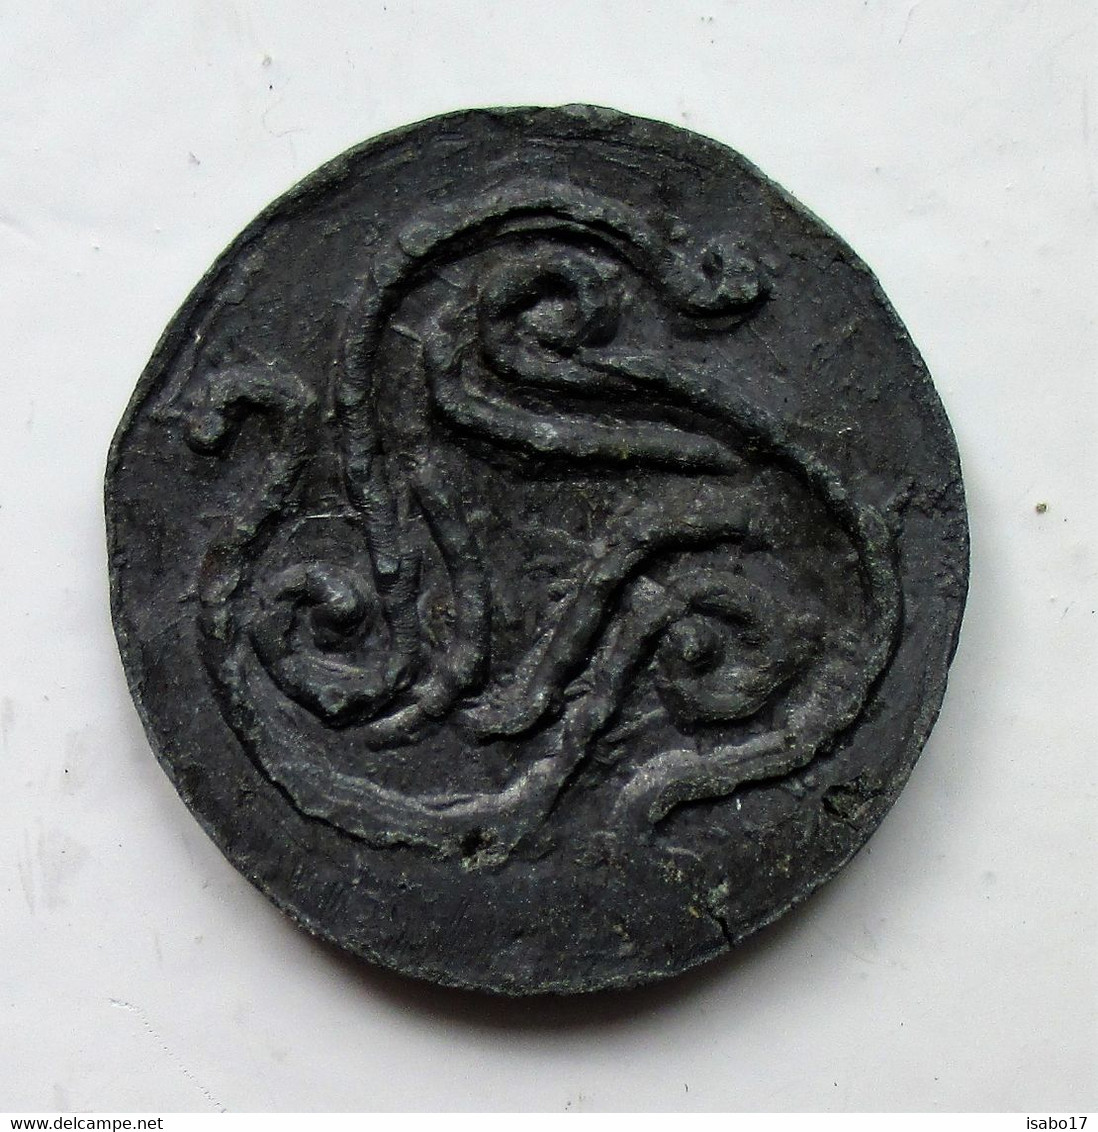 Antike Keltische Münze Mit Triskelezeichen Unbekannt - Origine Sconosciuta